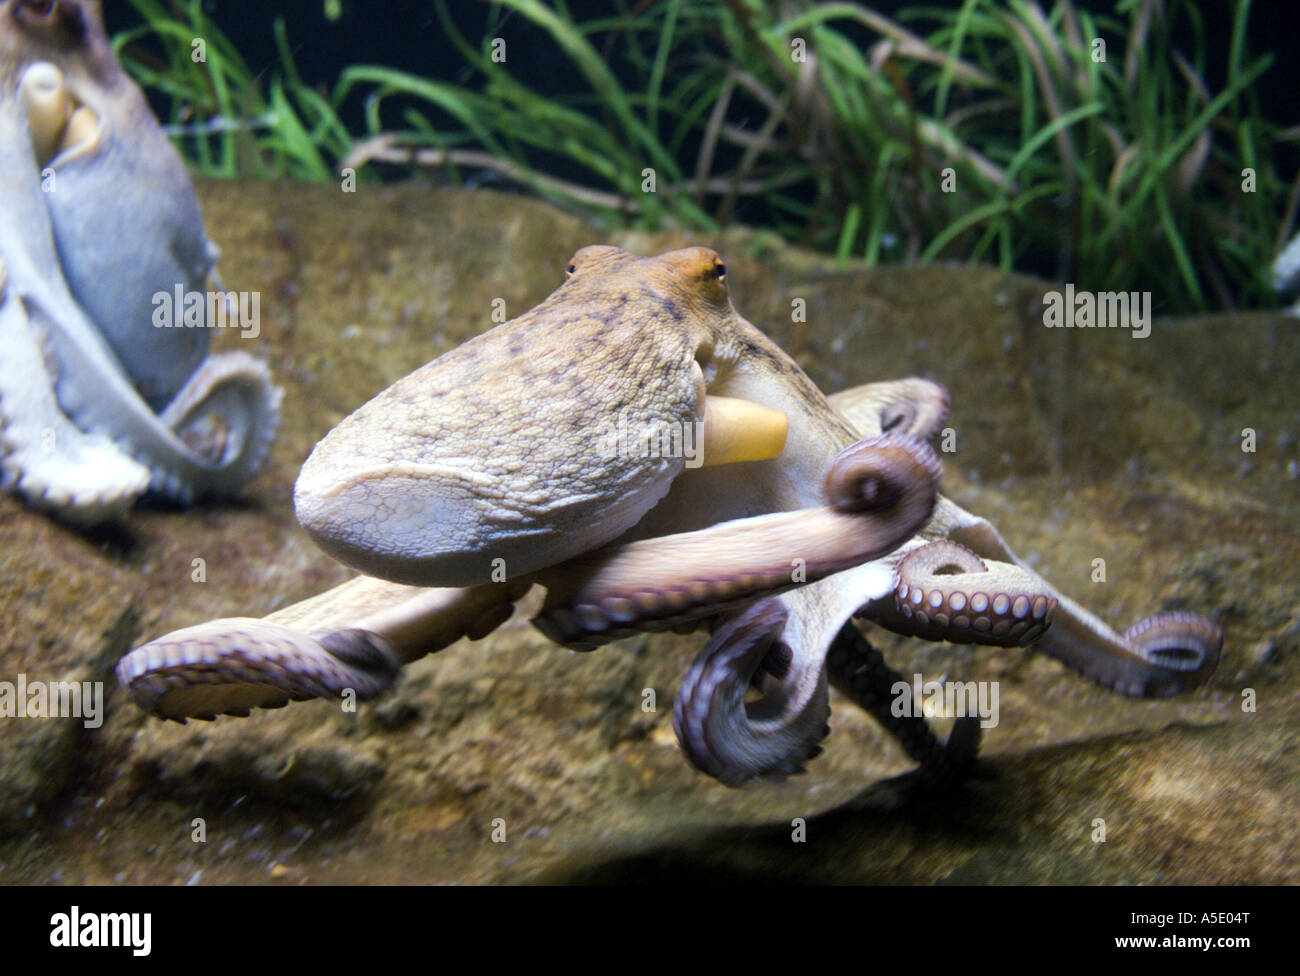 Poulpe commun, Octopus, Atlantique commun européen commun poulpe (Octopus vulgaris), natation, Ozeanarium Banque D'Images